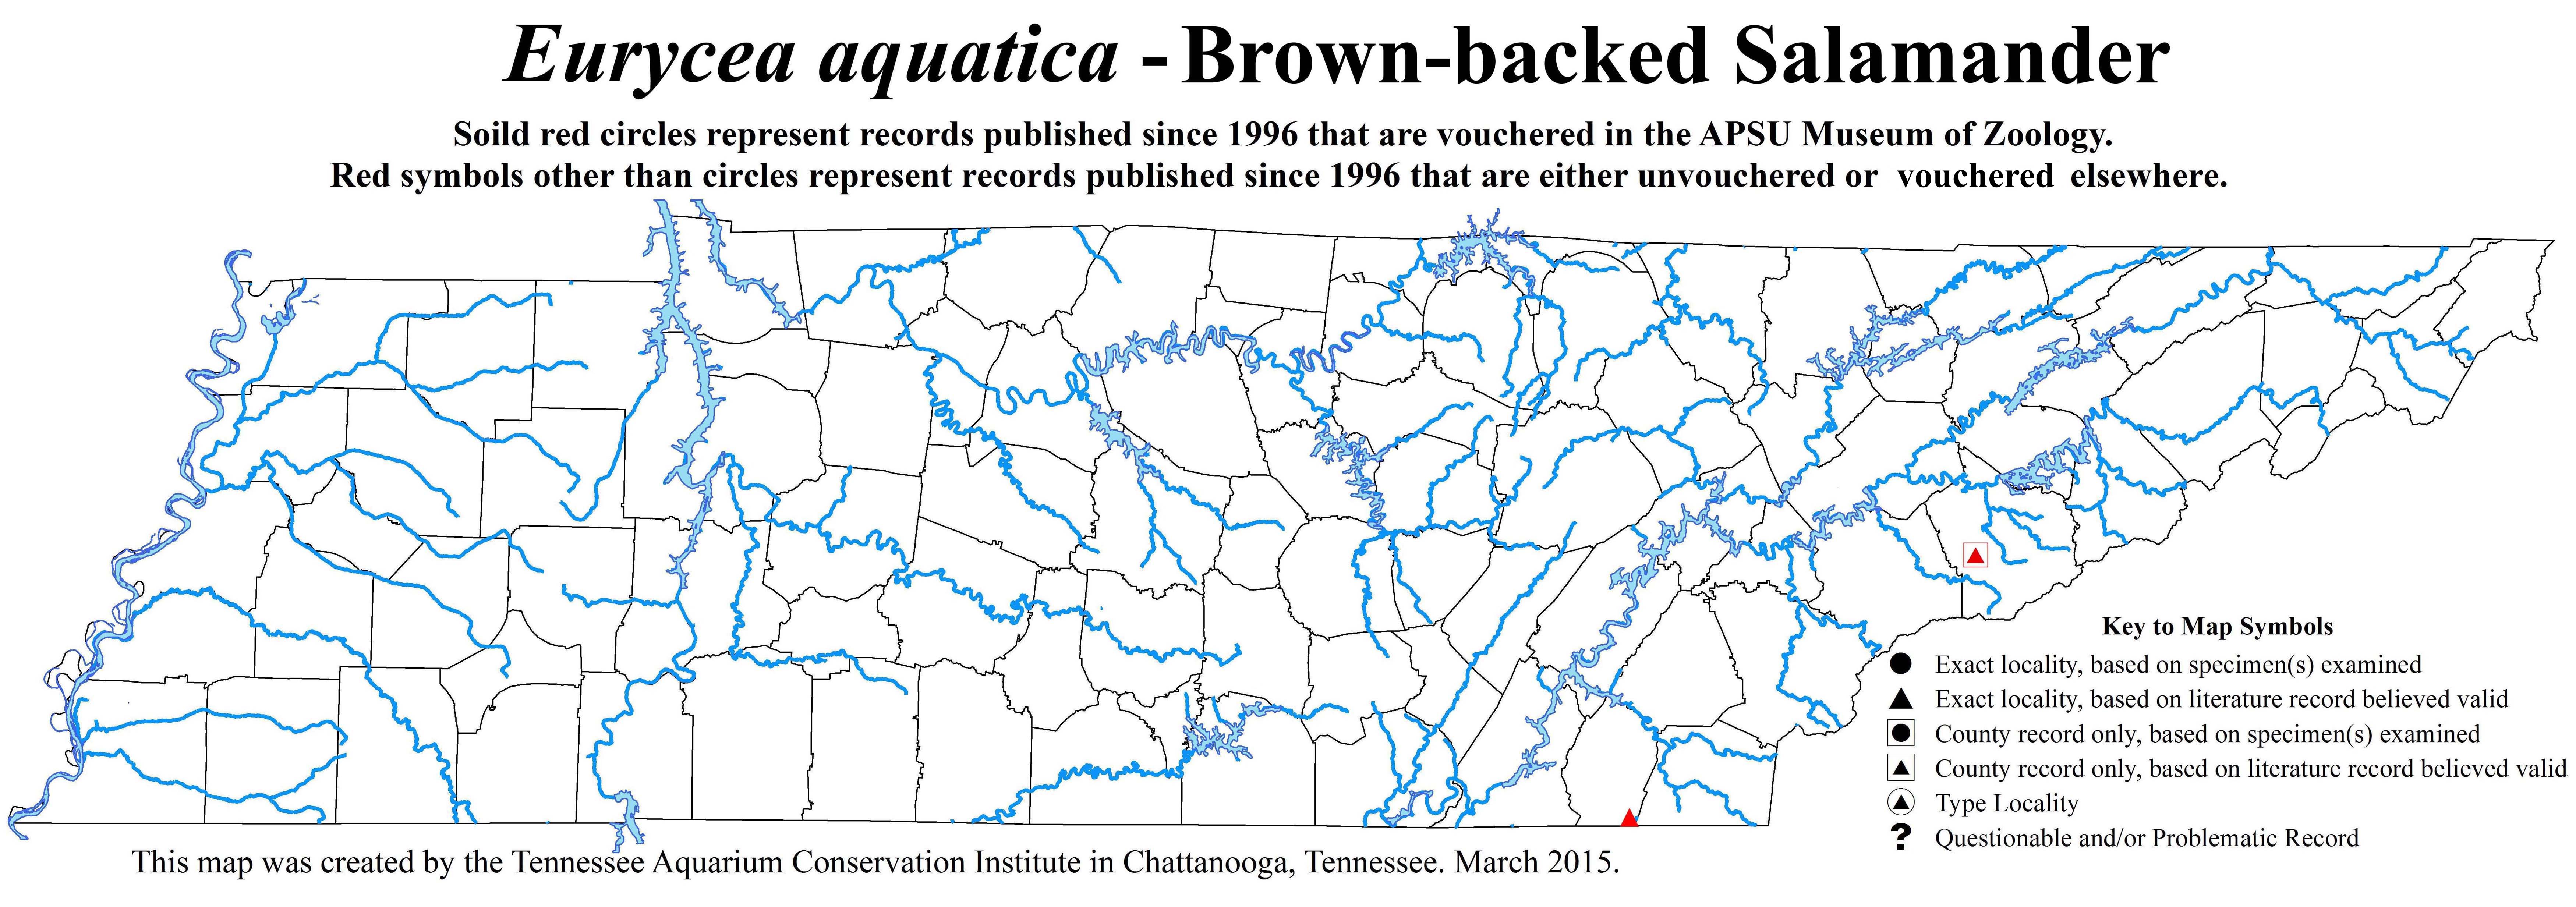 Update to Eurycea aquatica